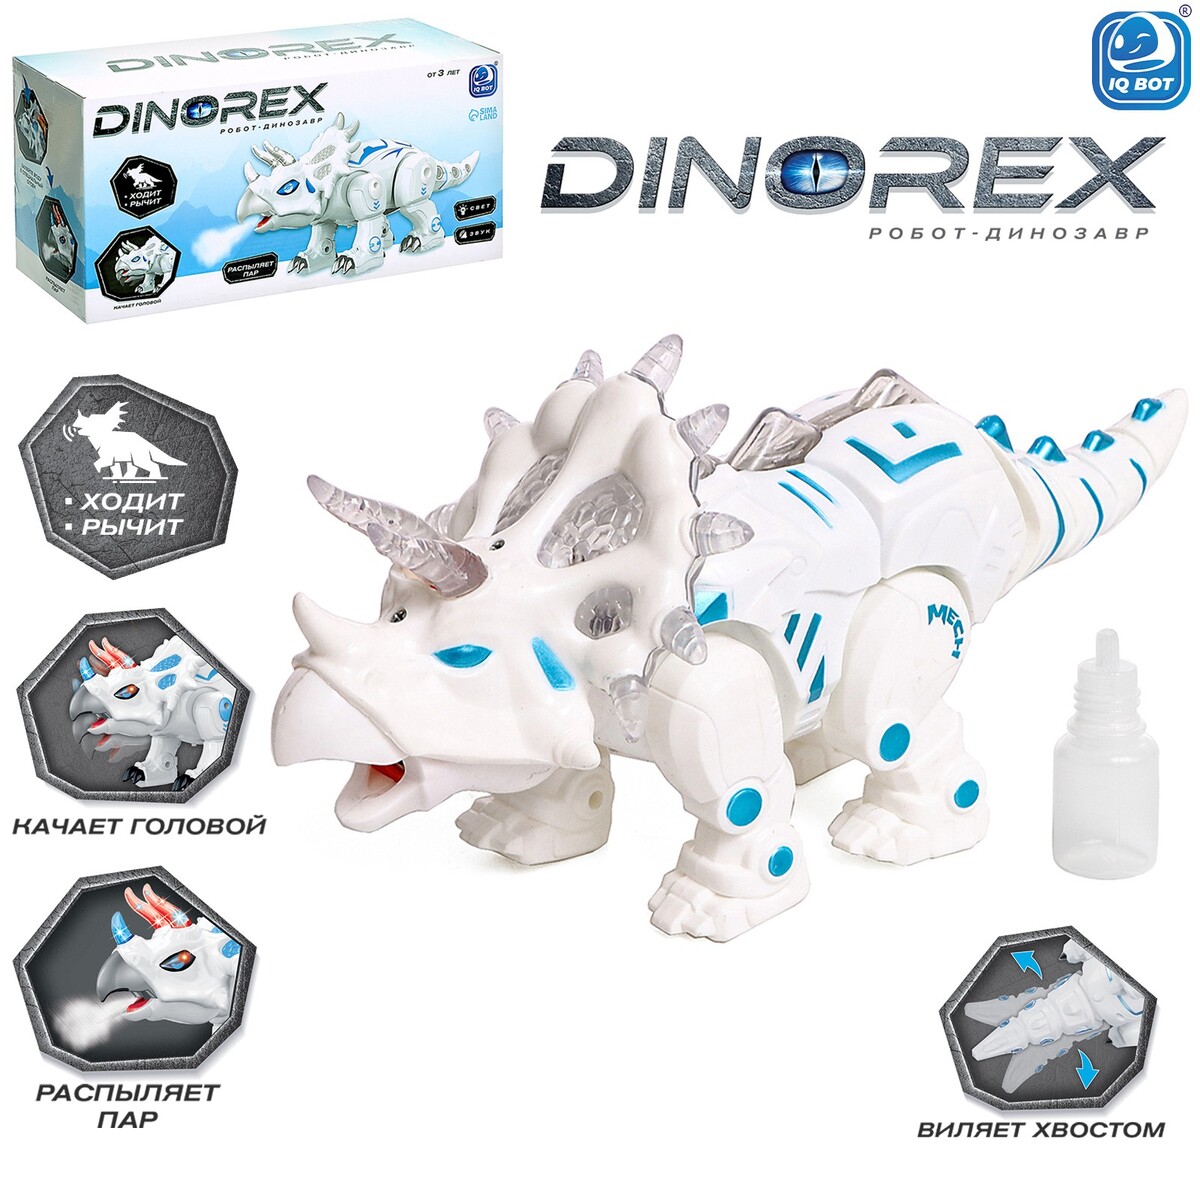 Робот динозавр dinorex iq bot, интерактивный: световые и звуковые эффекты, на батарейках робот интерактивный милый робот световые и звуковые эффекты красный